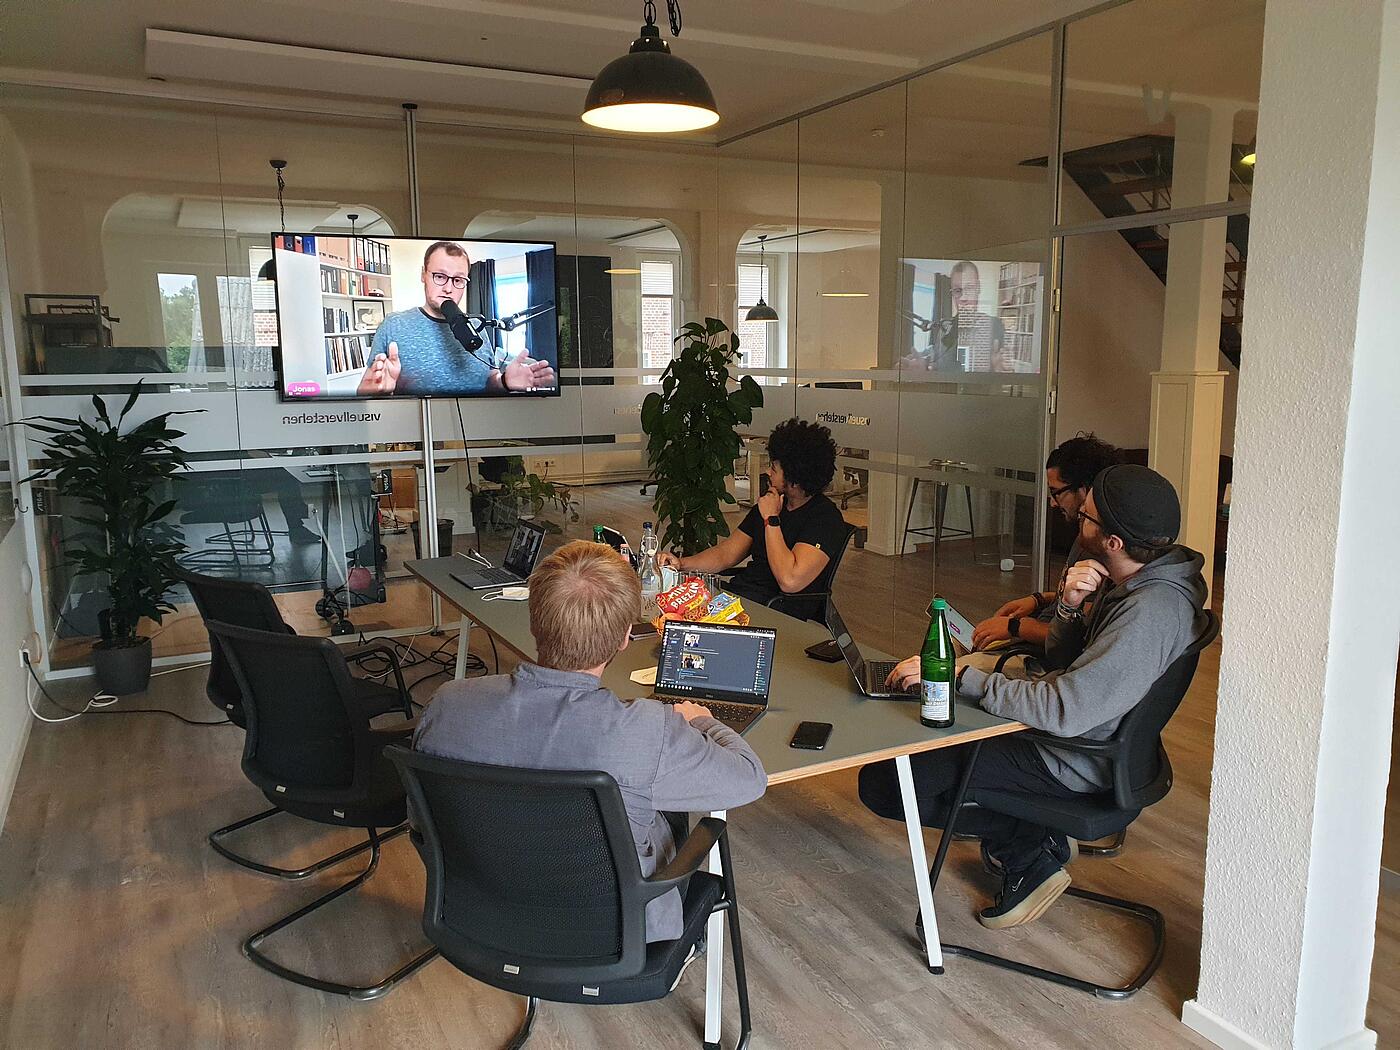 Mehrere Mitarbeiter von visuellverstehen sitzen in einem modernen Besprechungsraum und schauen auf einen Bildschirm an der Wand.